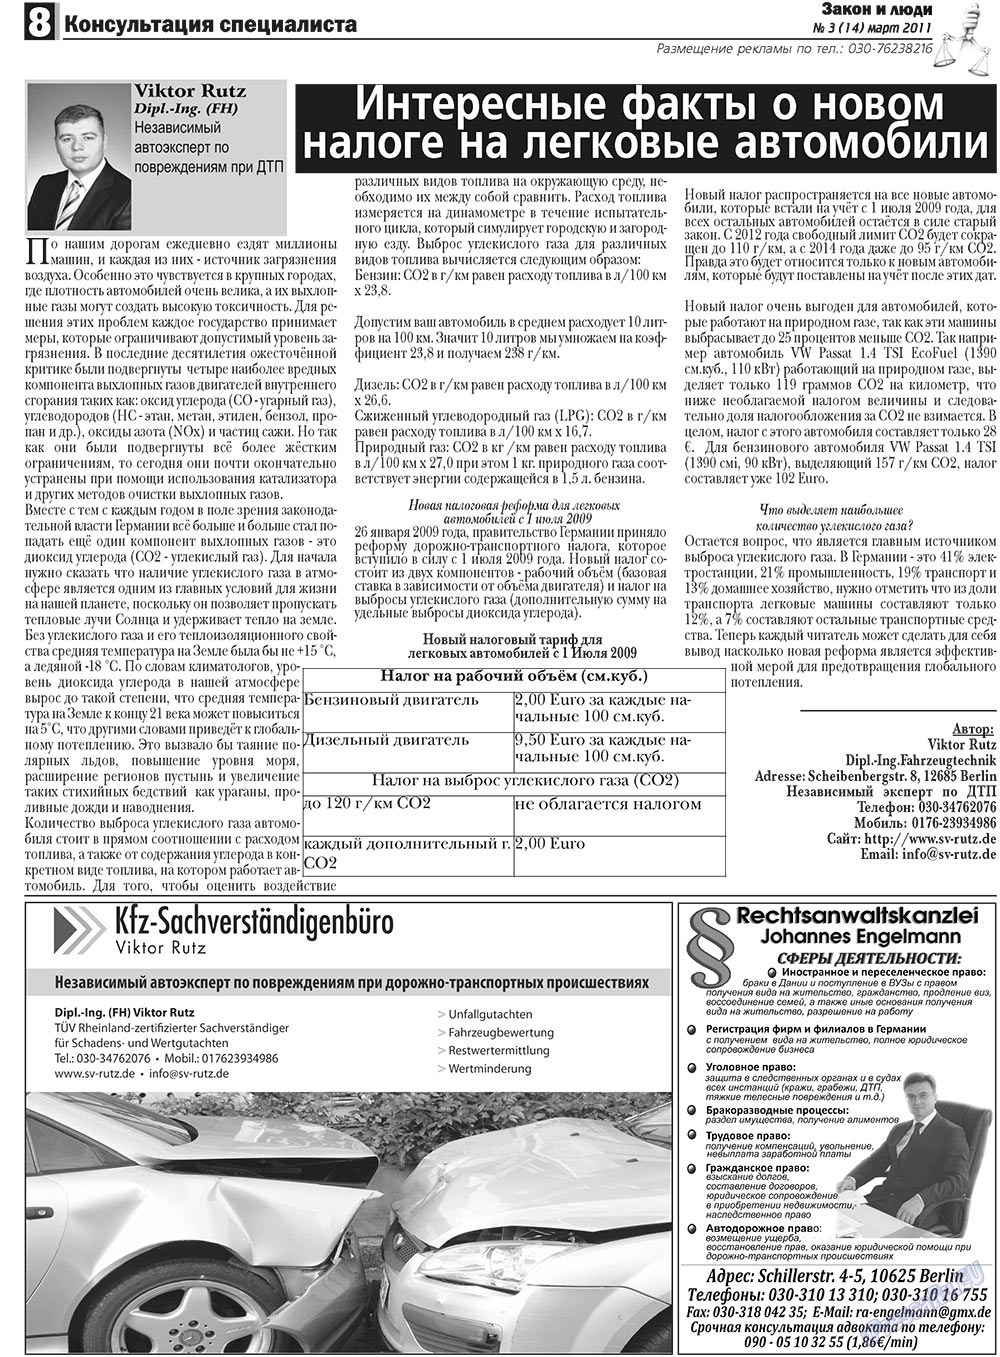 Закон и люди, газета. 2011 №3 стр.8